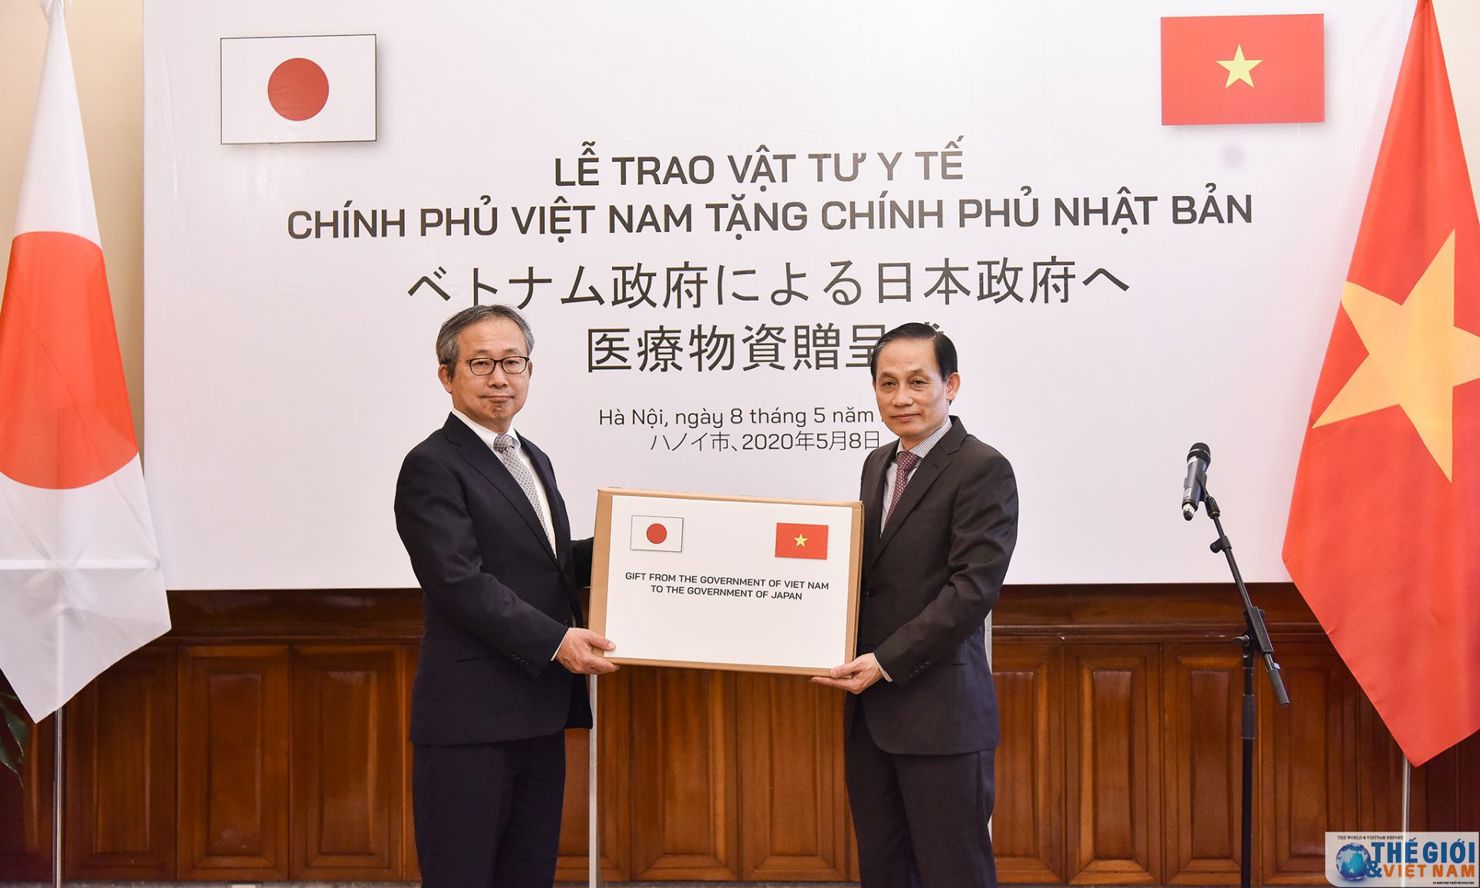 Trong đại dịch Covid-19, thông qua Đại sứ Nhật Bản tại Việt Nam, Chính phủ Việt Nam Việt Nam cũng đã hỗ trợ vật tư y tế (140.000 khẩu trang y tế) cho Chính phủ và nhân dân Nhật Bản.